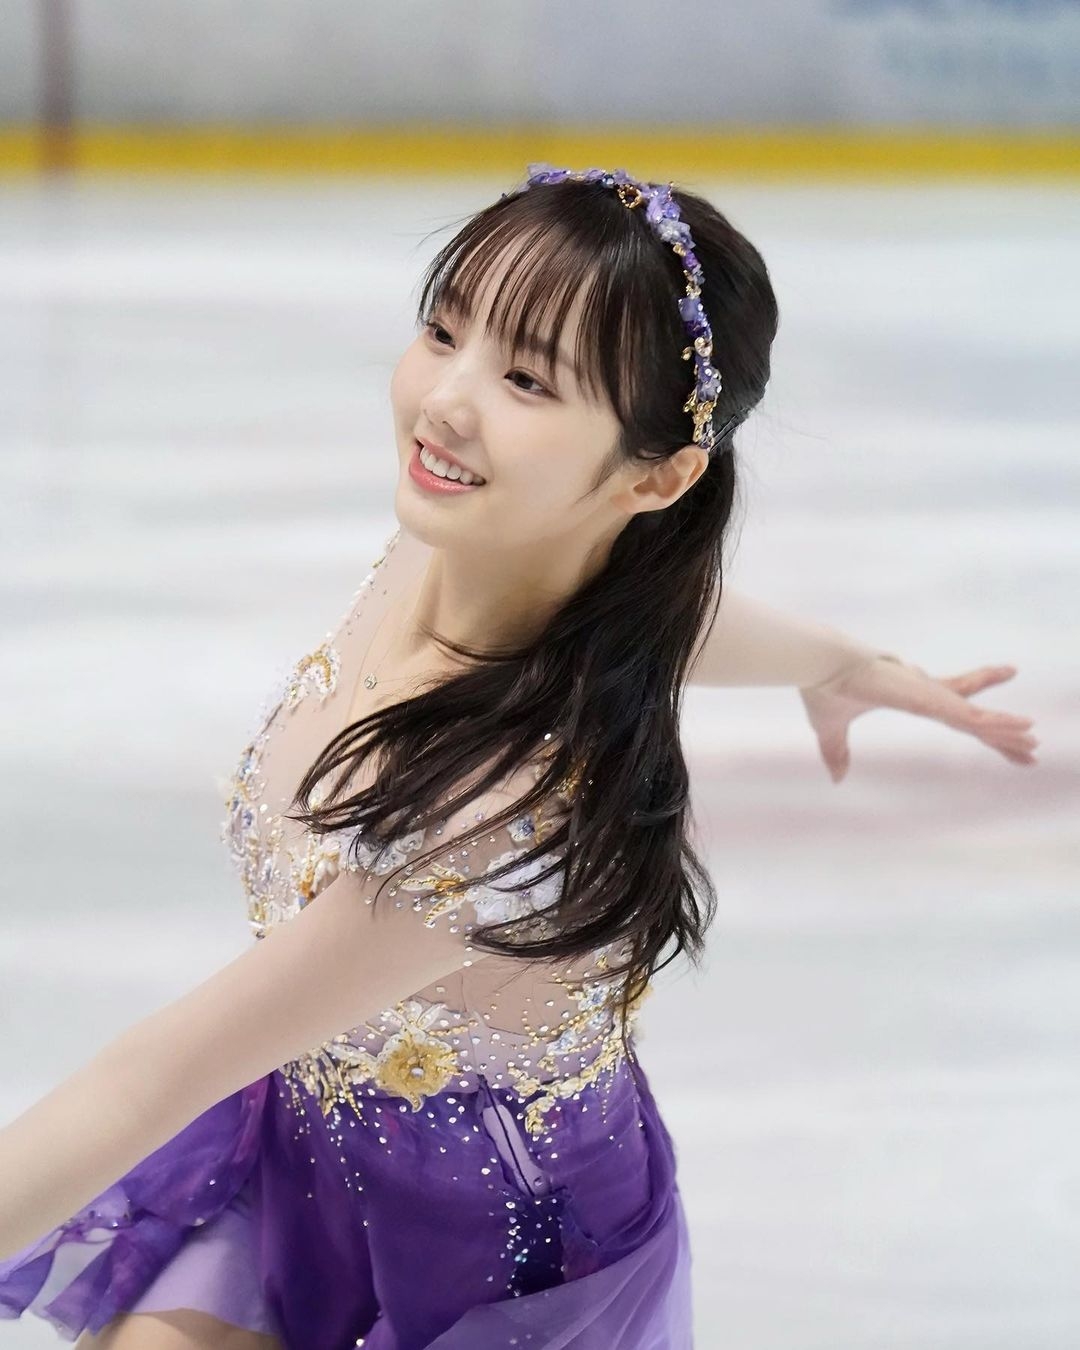 「日本冰上精靈」本田真凜 15歲奪錦標賽金牌 無預警宣布退役